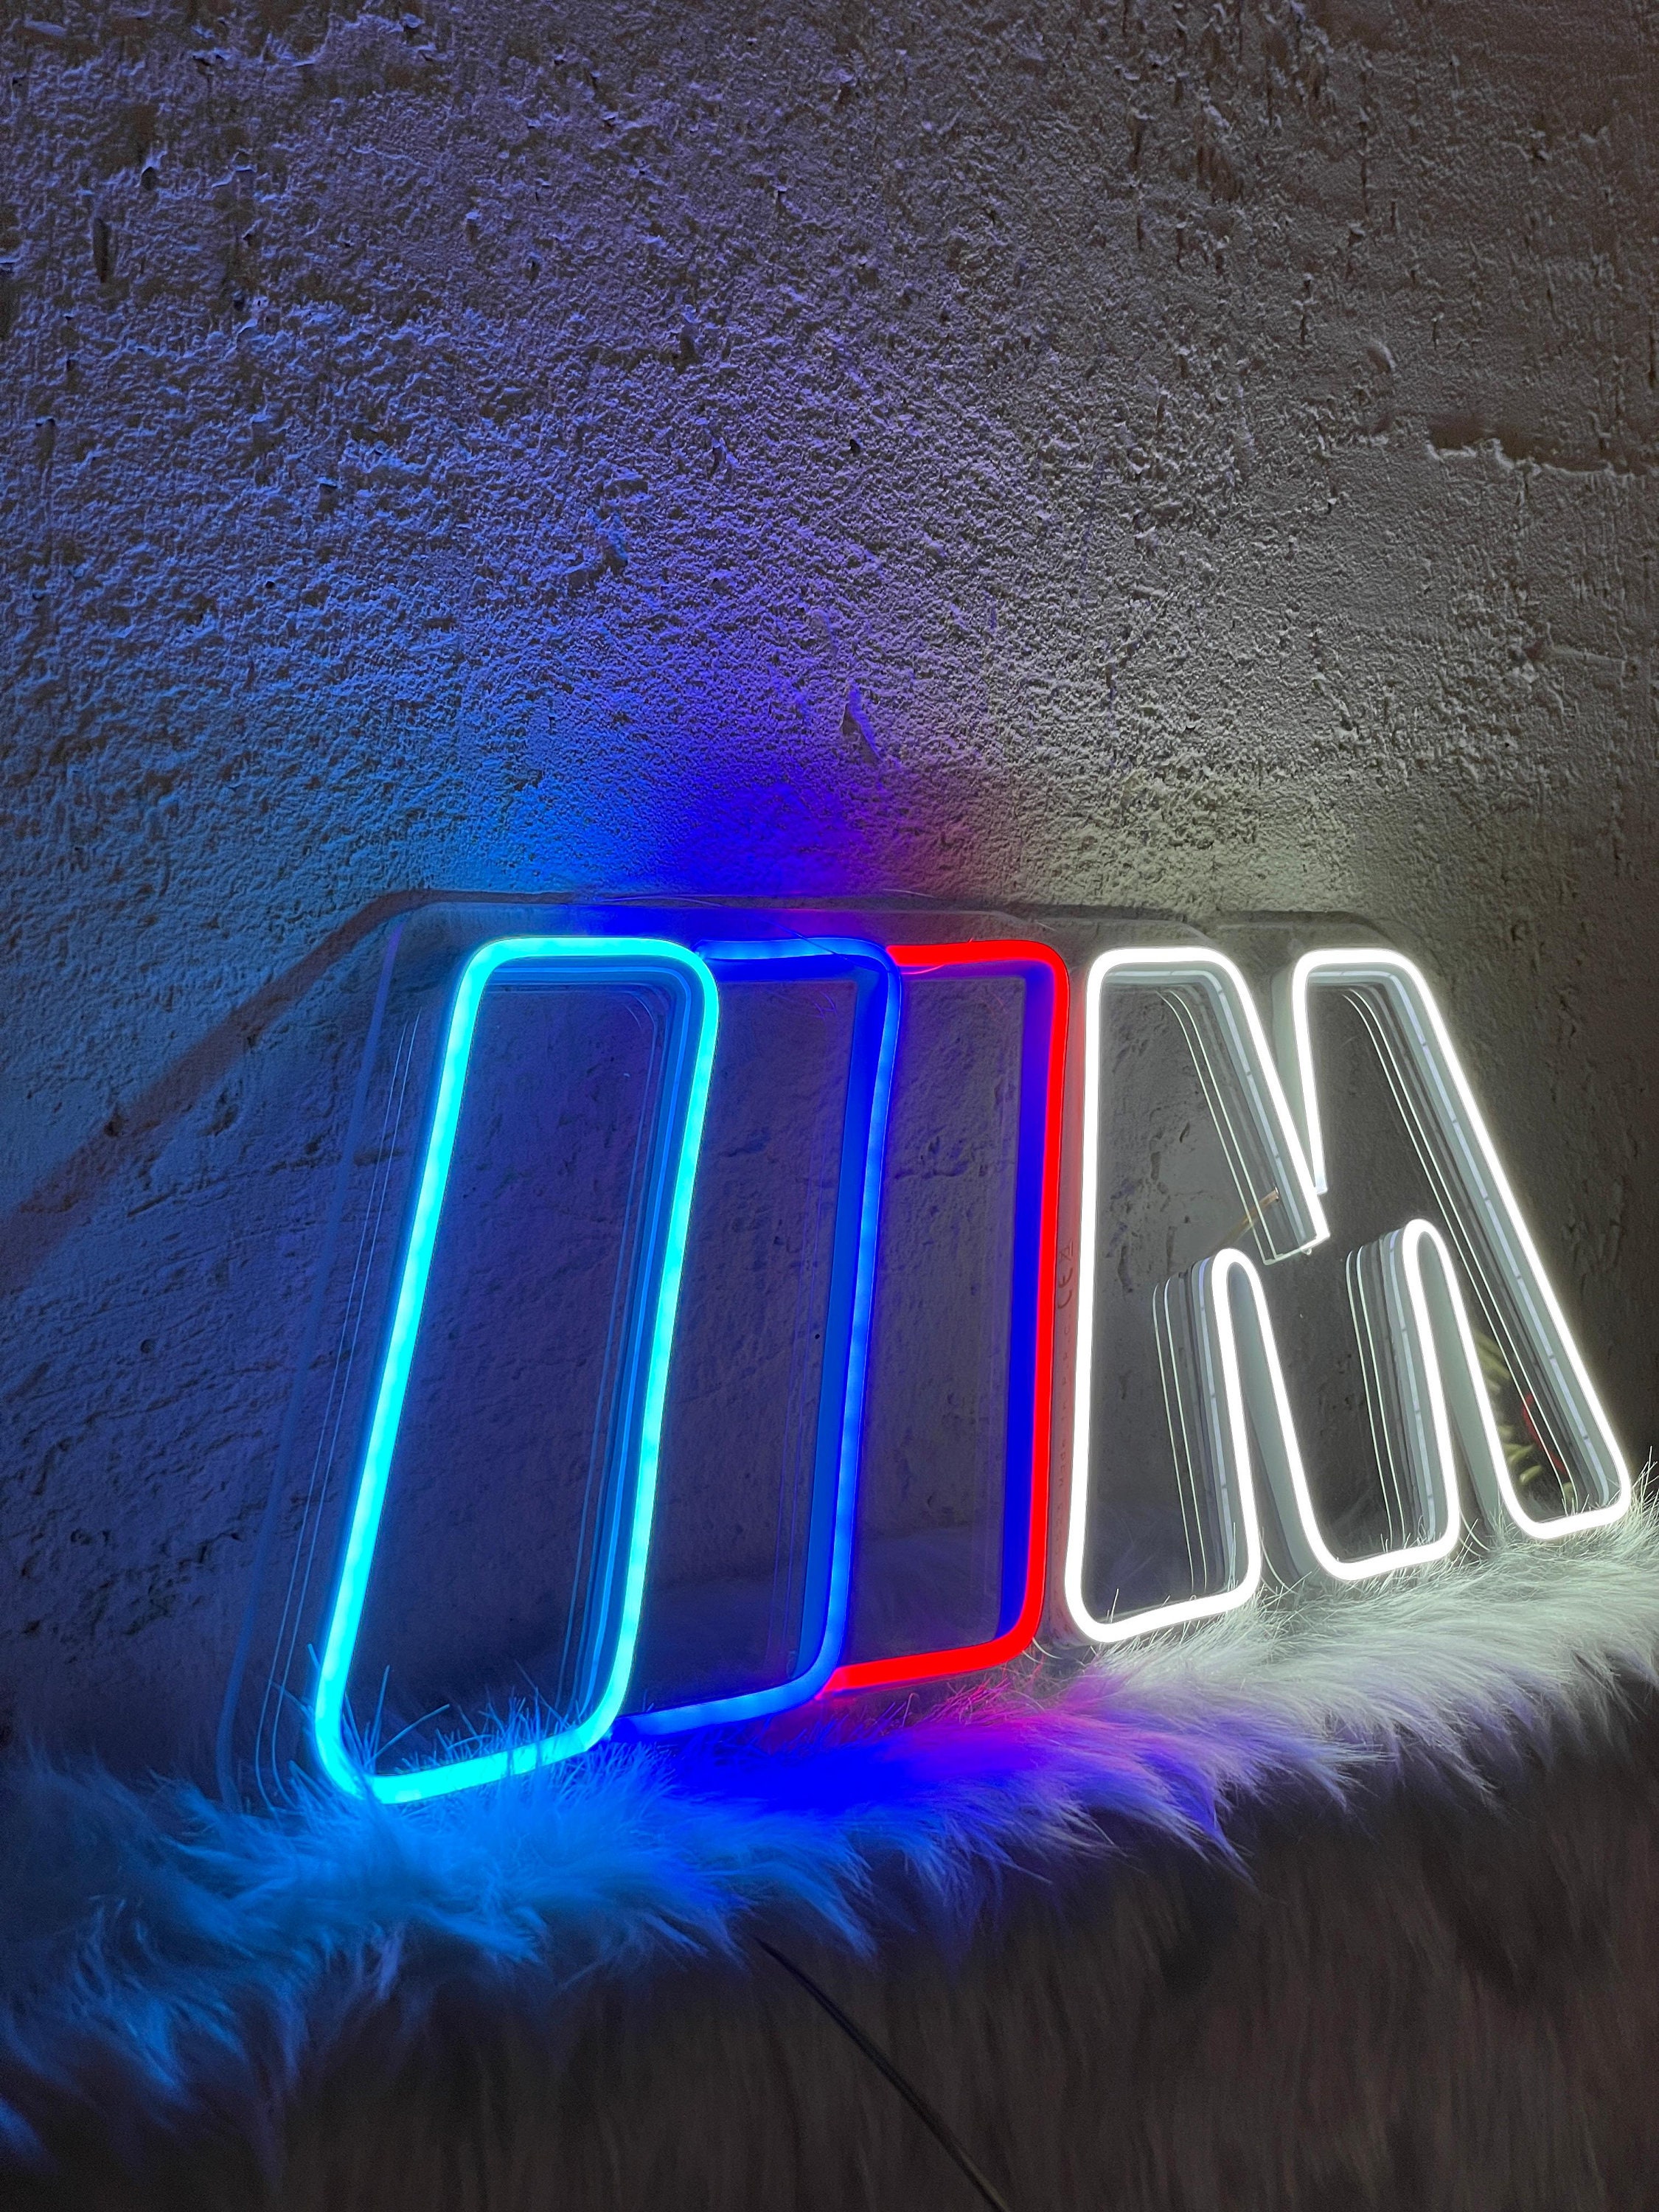 b m w logo néon signe au néon personnalisé signe au néon chambre fête bar  mur chambre décor logo marque chute swoosh led lampe chambre